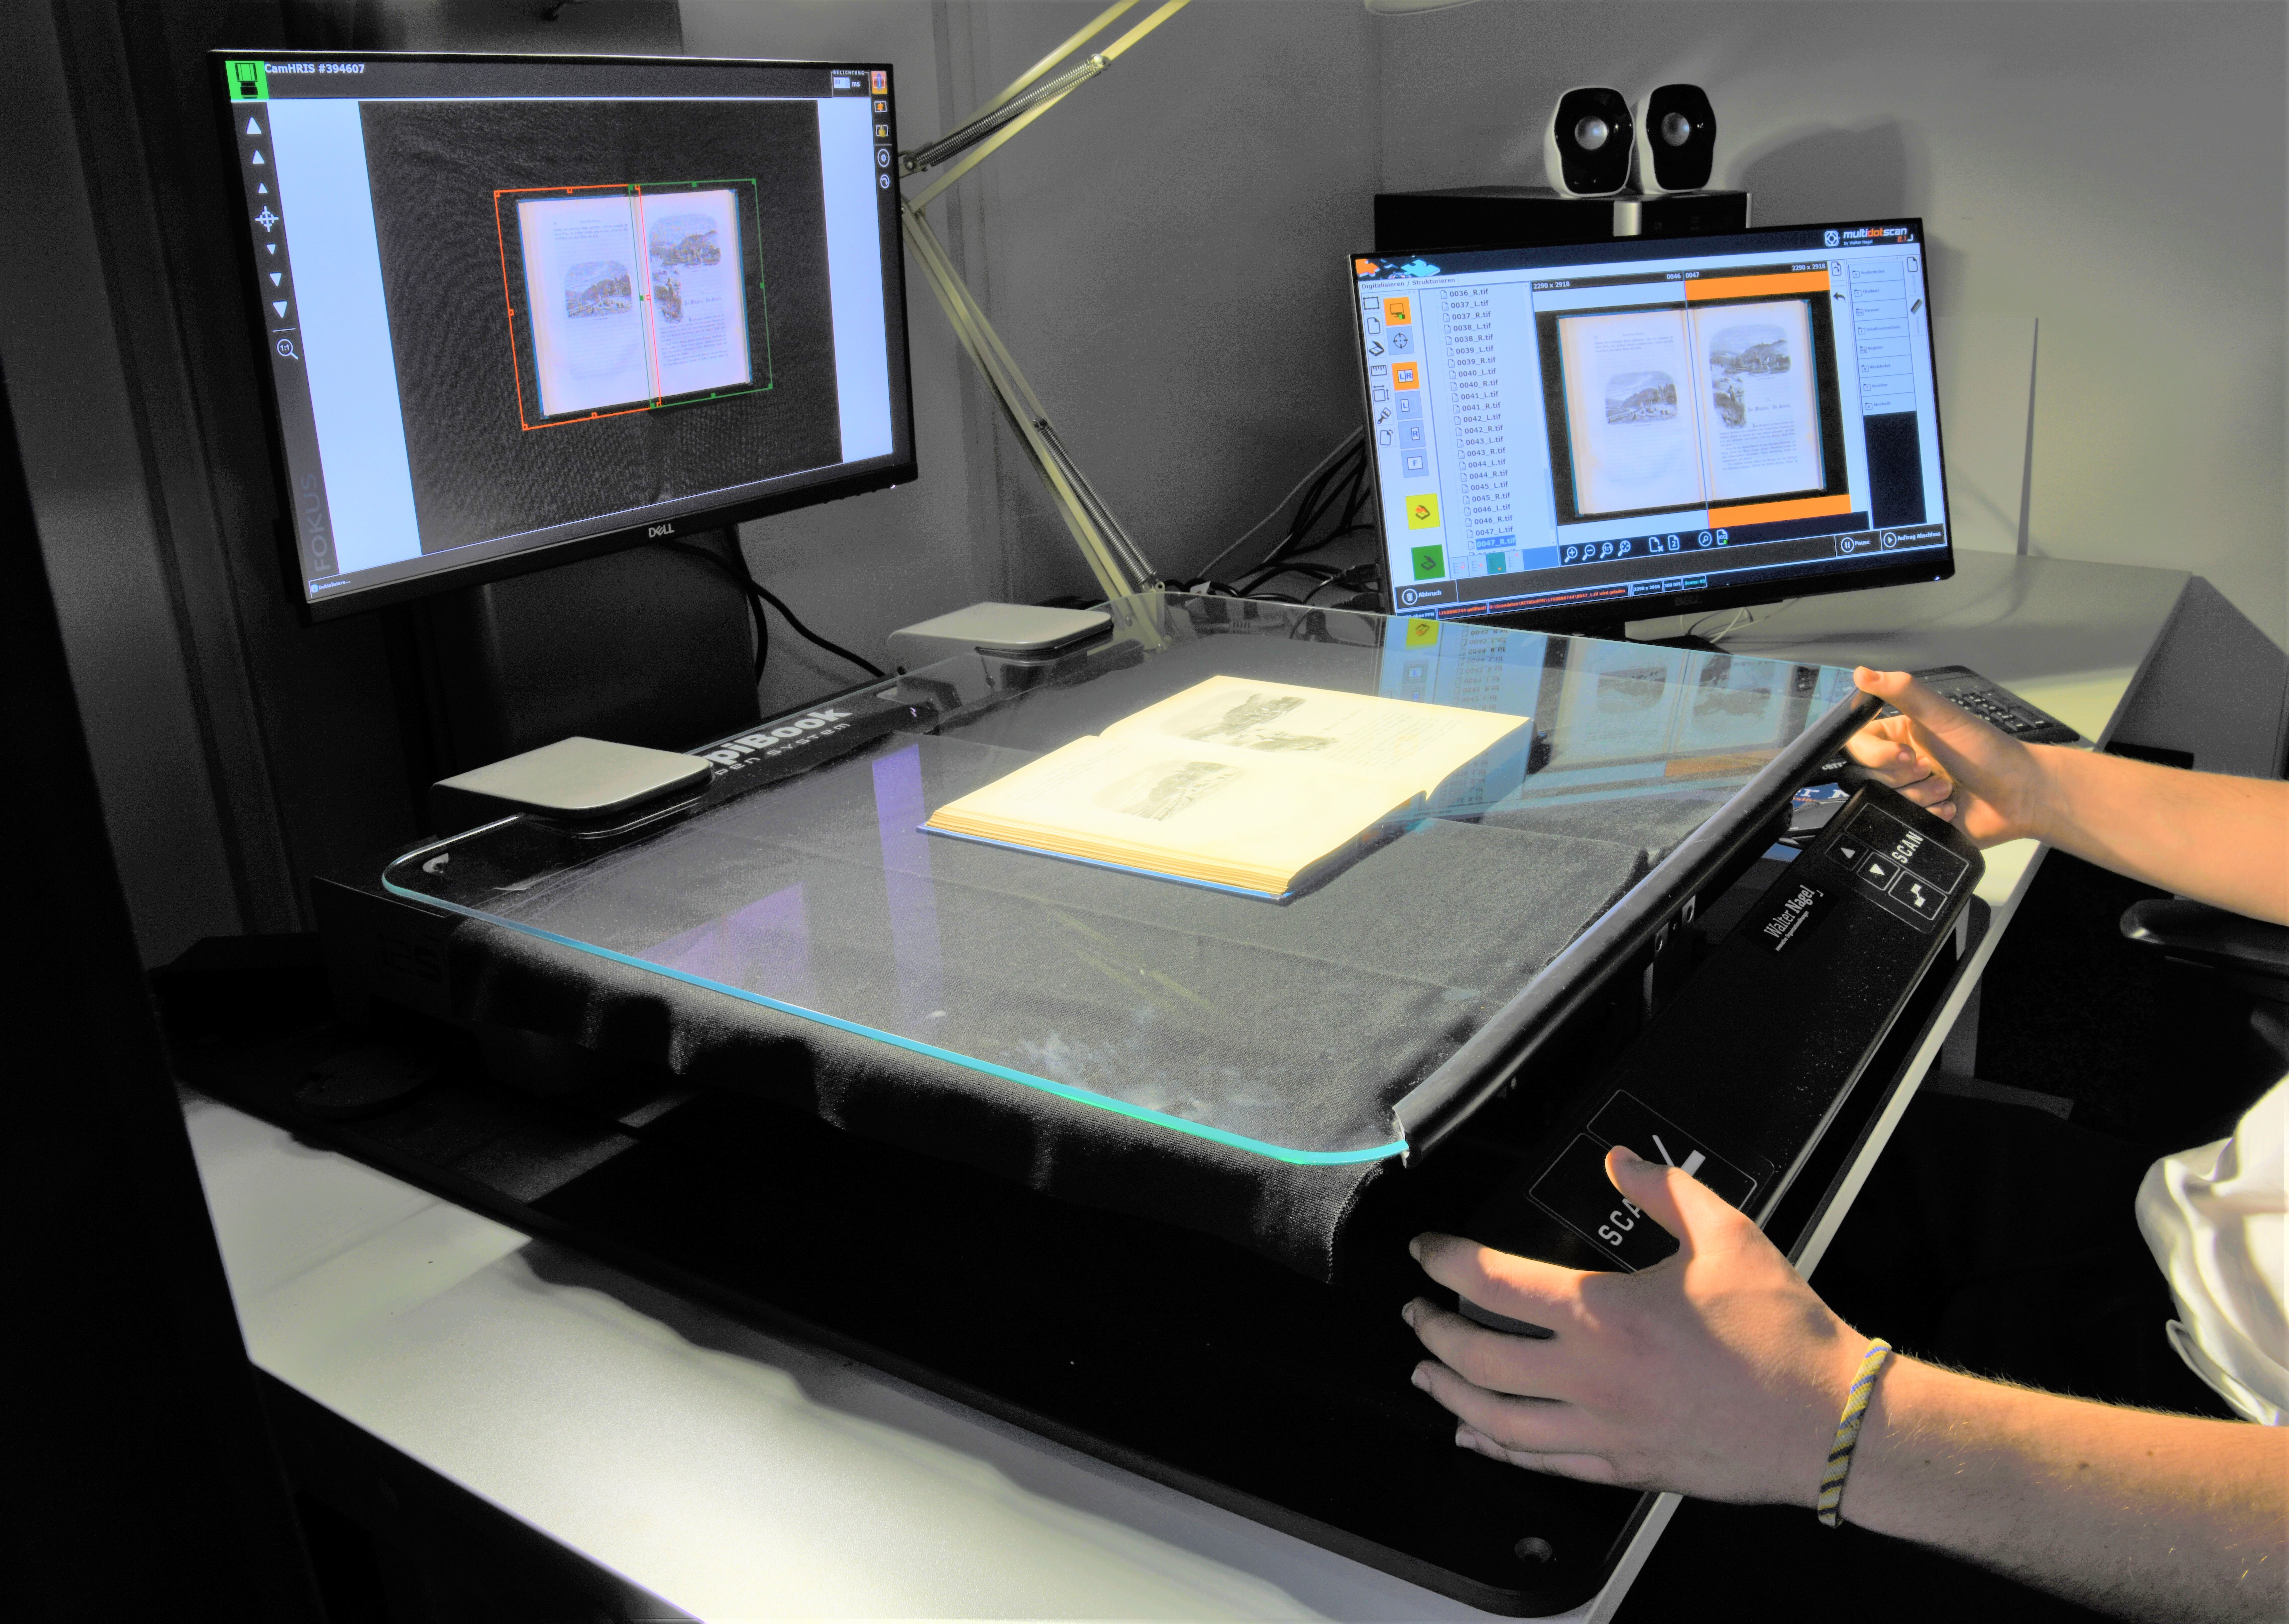 Das Bild zeigt einen Copibook-Scanner auf einem Arbeitstisch. Ein Buch liegt aufgeklappt auf der Oberfläche des Geräts. Die Hände einer Mitarbeiterin liegen entspannt seitlich am Copibook.